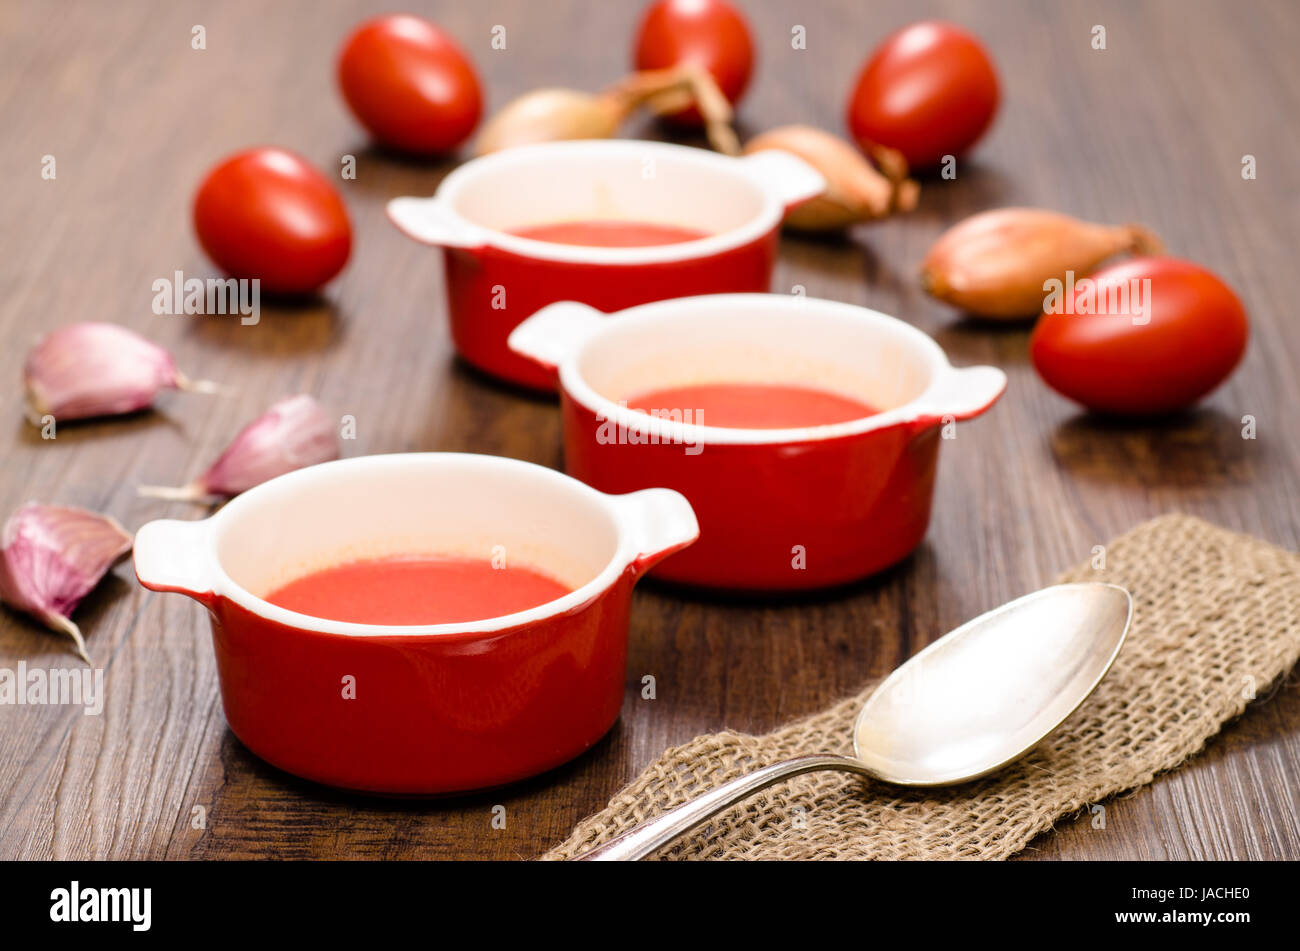 Tomatensuppe mit roten Tomaten und Knoblauch Stock Photo